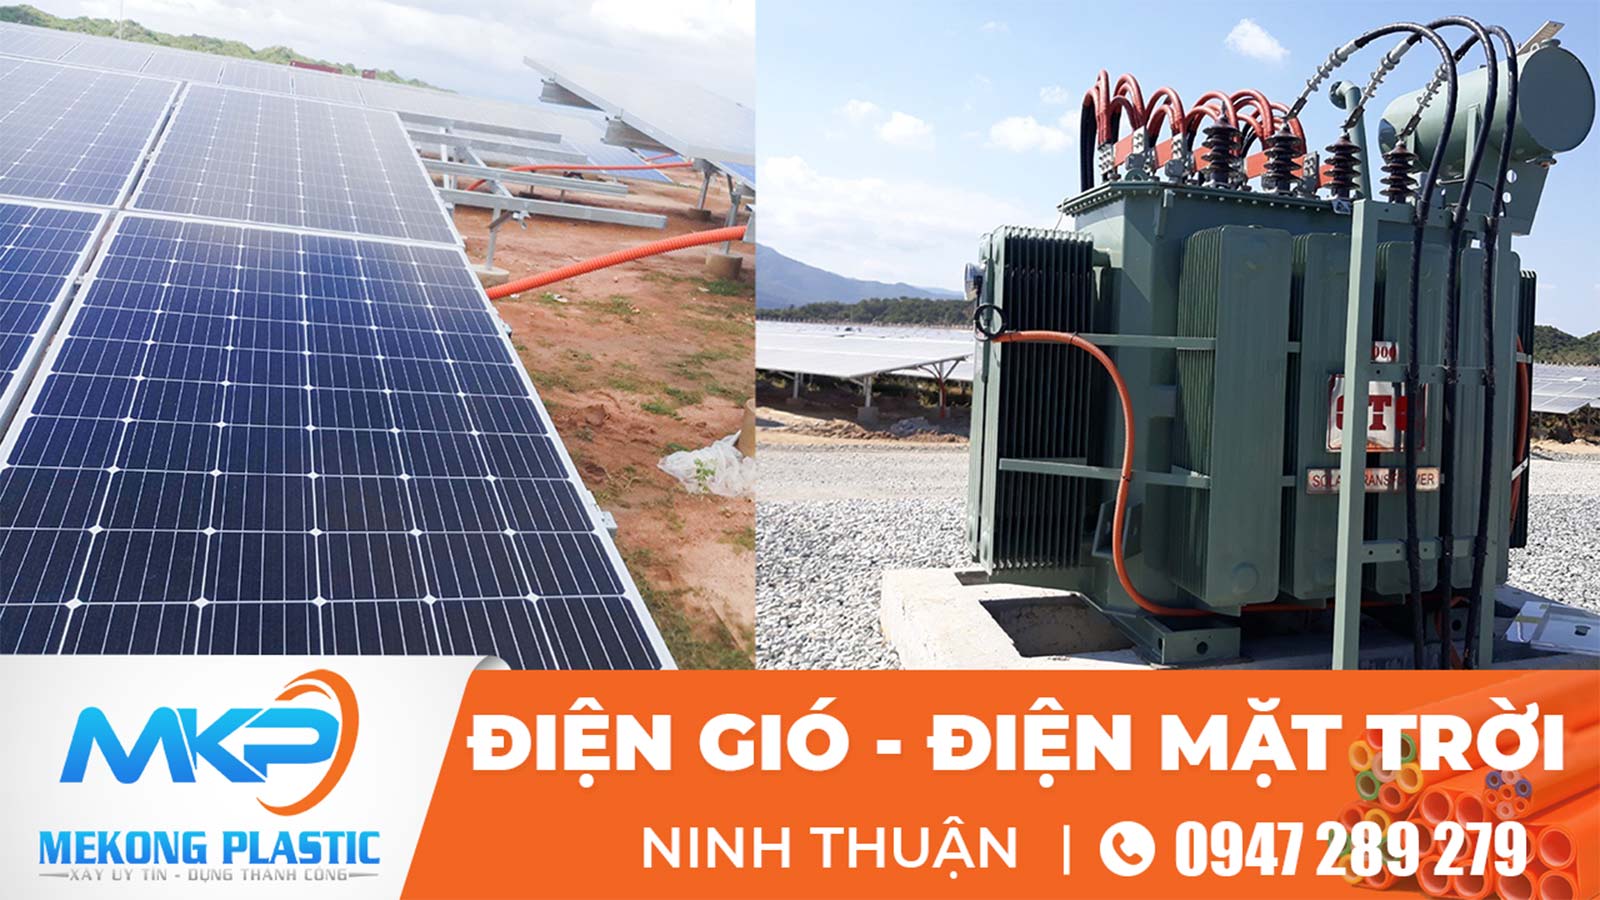 Cấp Ống Xoắn HDPE cho Dự‌ ‌án‌ ‌Nhà‌ ‌máy‌ ‌điện gió‌ cùng‌ ‌ống‌ ‌nhựa‌ ‌xoắn‌ ‌HDPE‌ ‌Mekong Plastic